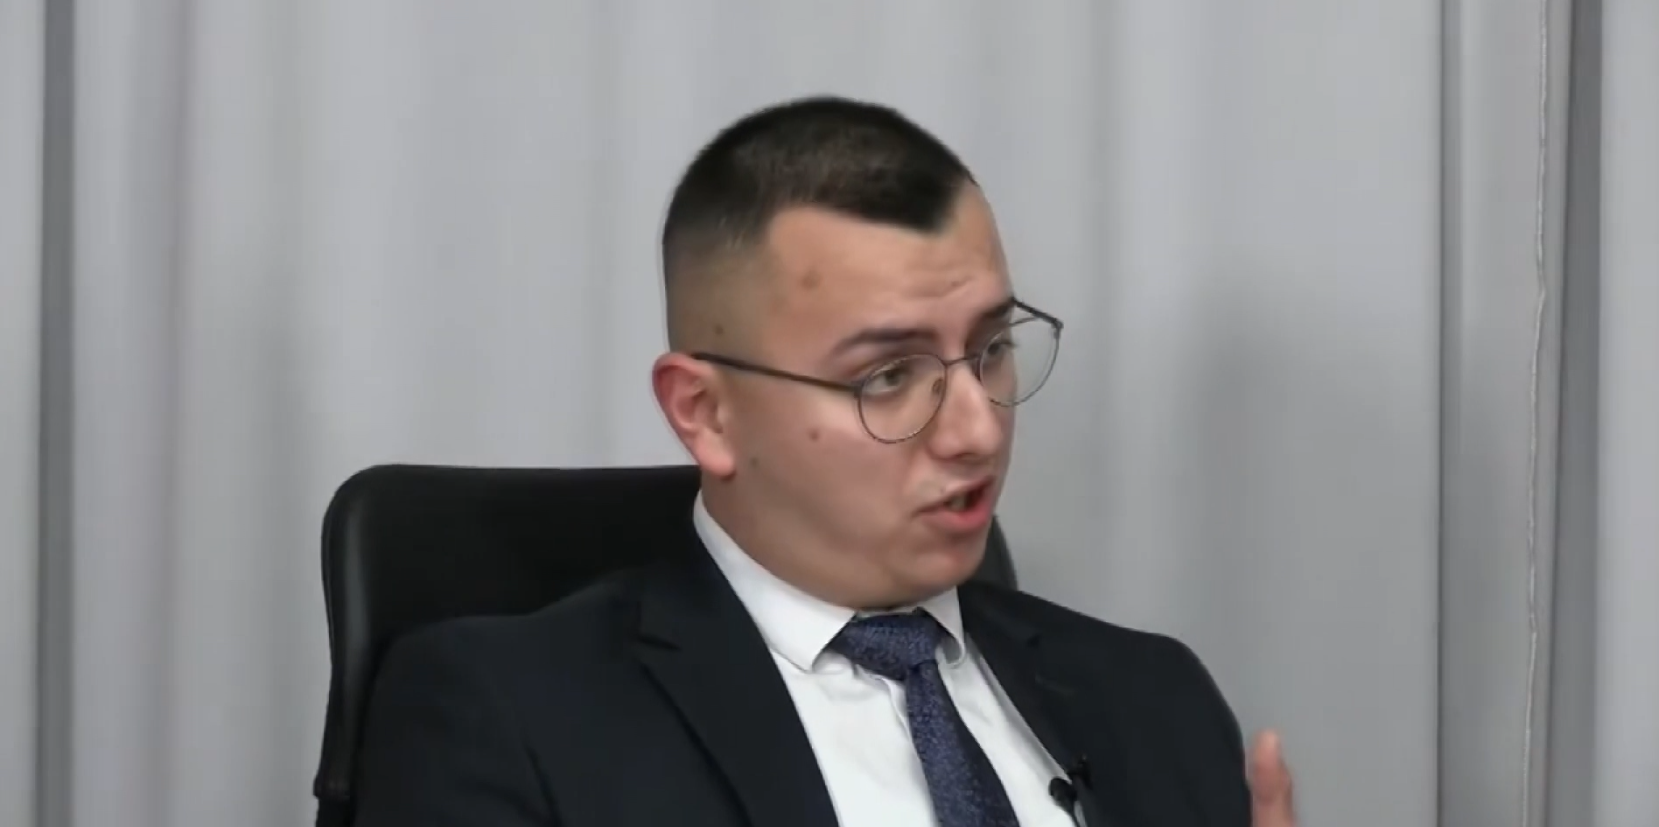 Adis Dazdarević: “Srbi su u Novom Pazaru manjina, a mi ćemo se baviti pravima manjina“ (VIDEO)